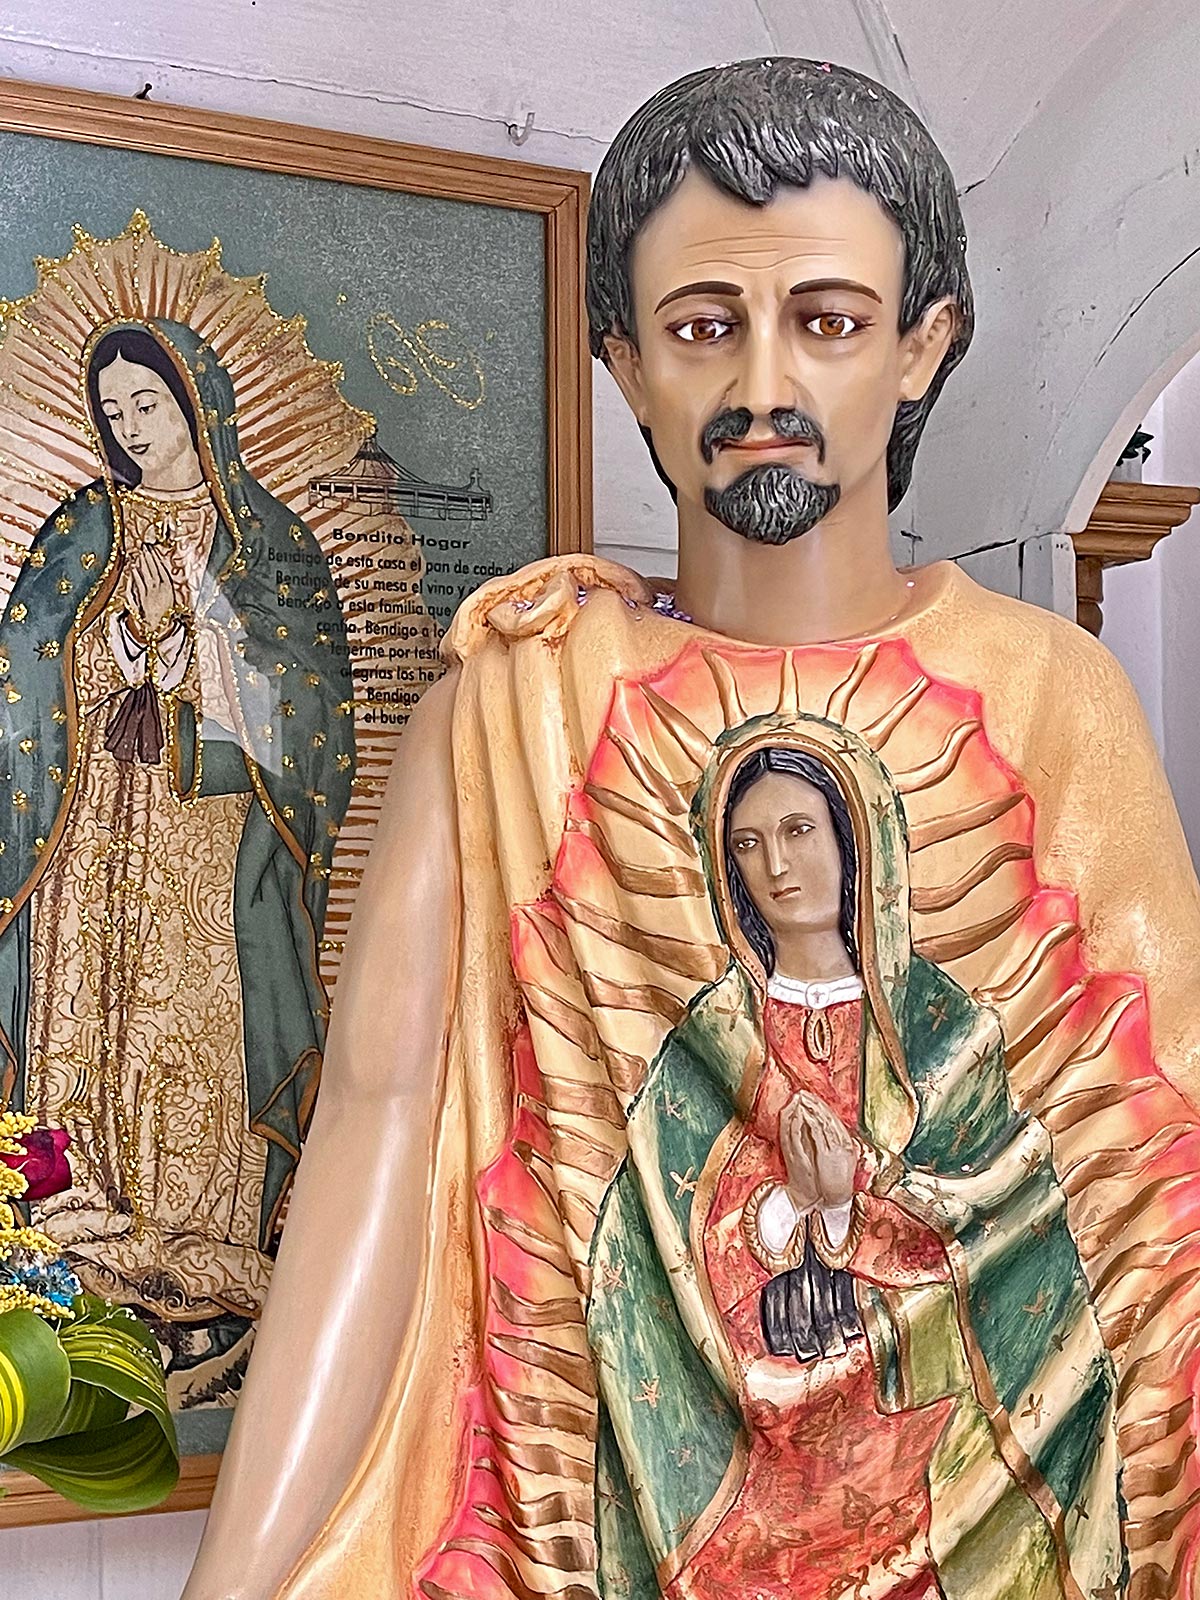 मैरी की चमत्कारी छवि के साथ जुआन डिएगो की मूर्ति उनके कपड़े के लबादे, चर्च ऑफ ग्वाडालूप, सैन क्रिस्टोबल पर अंकित है